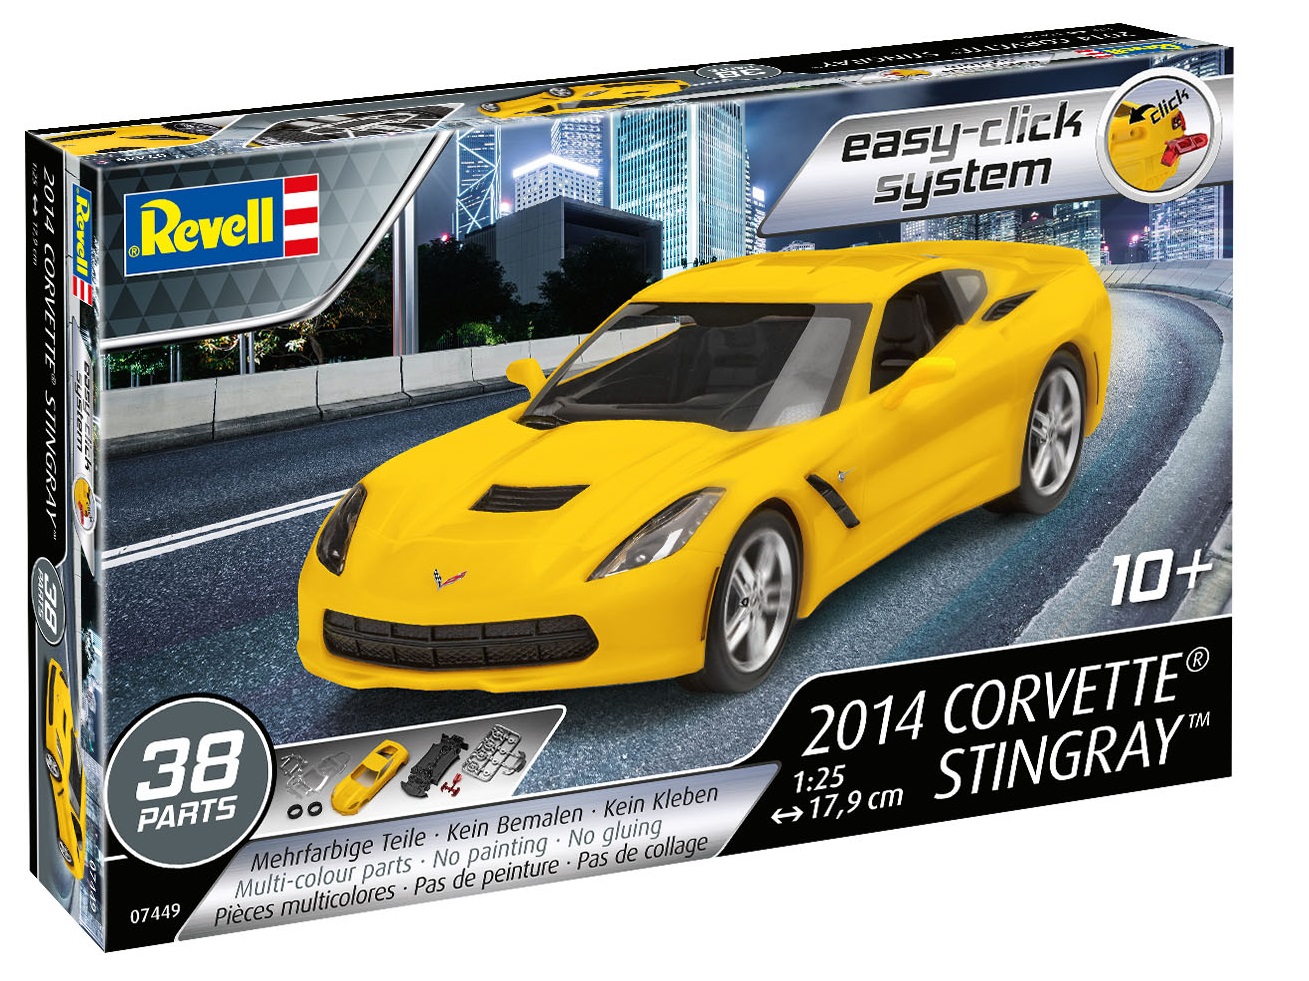    Corvette Stingray 2014 .,  1:25, Revell 07449. # 1 hobbyplus.ru